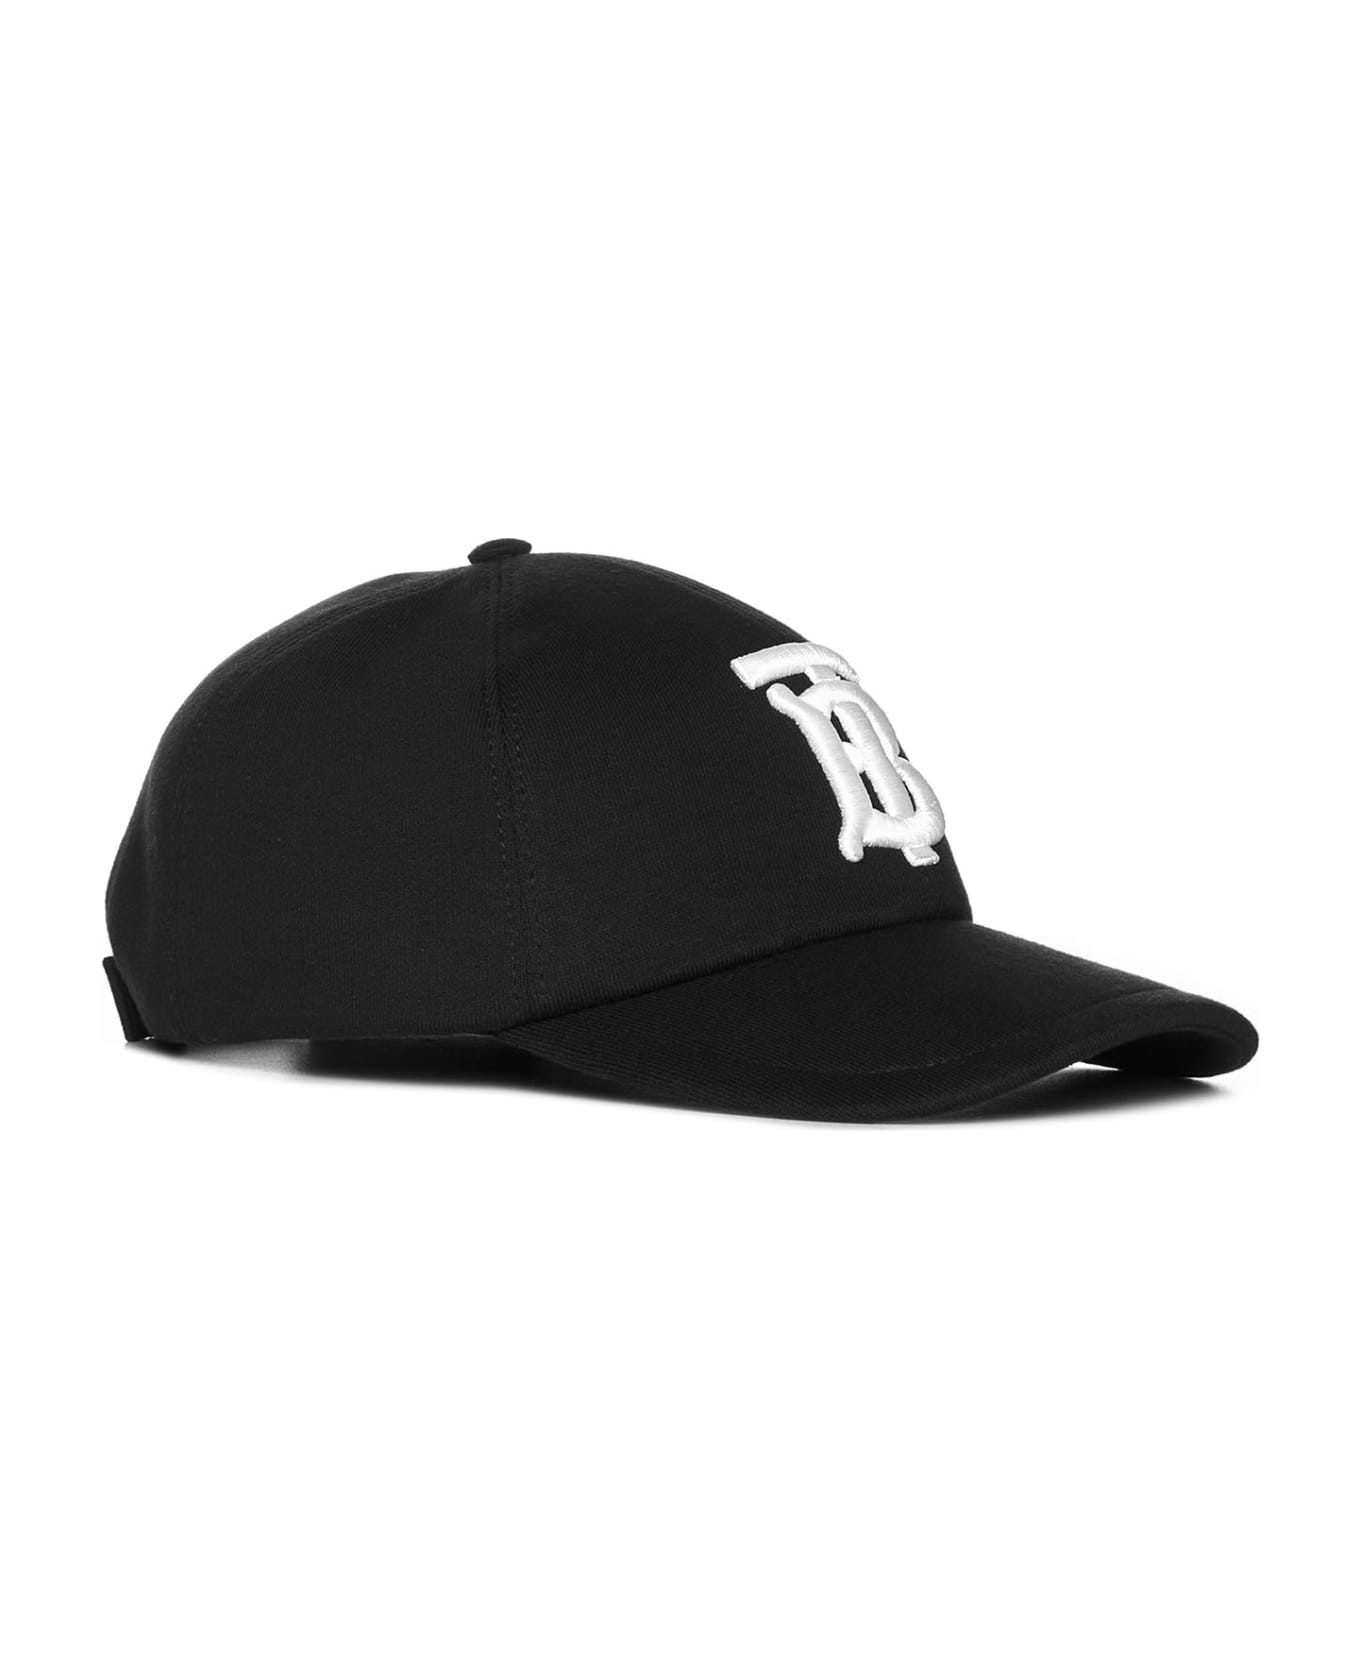 Burberry 'tb' Cap - Black 帽子